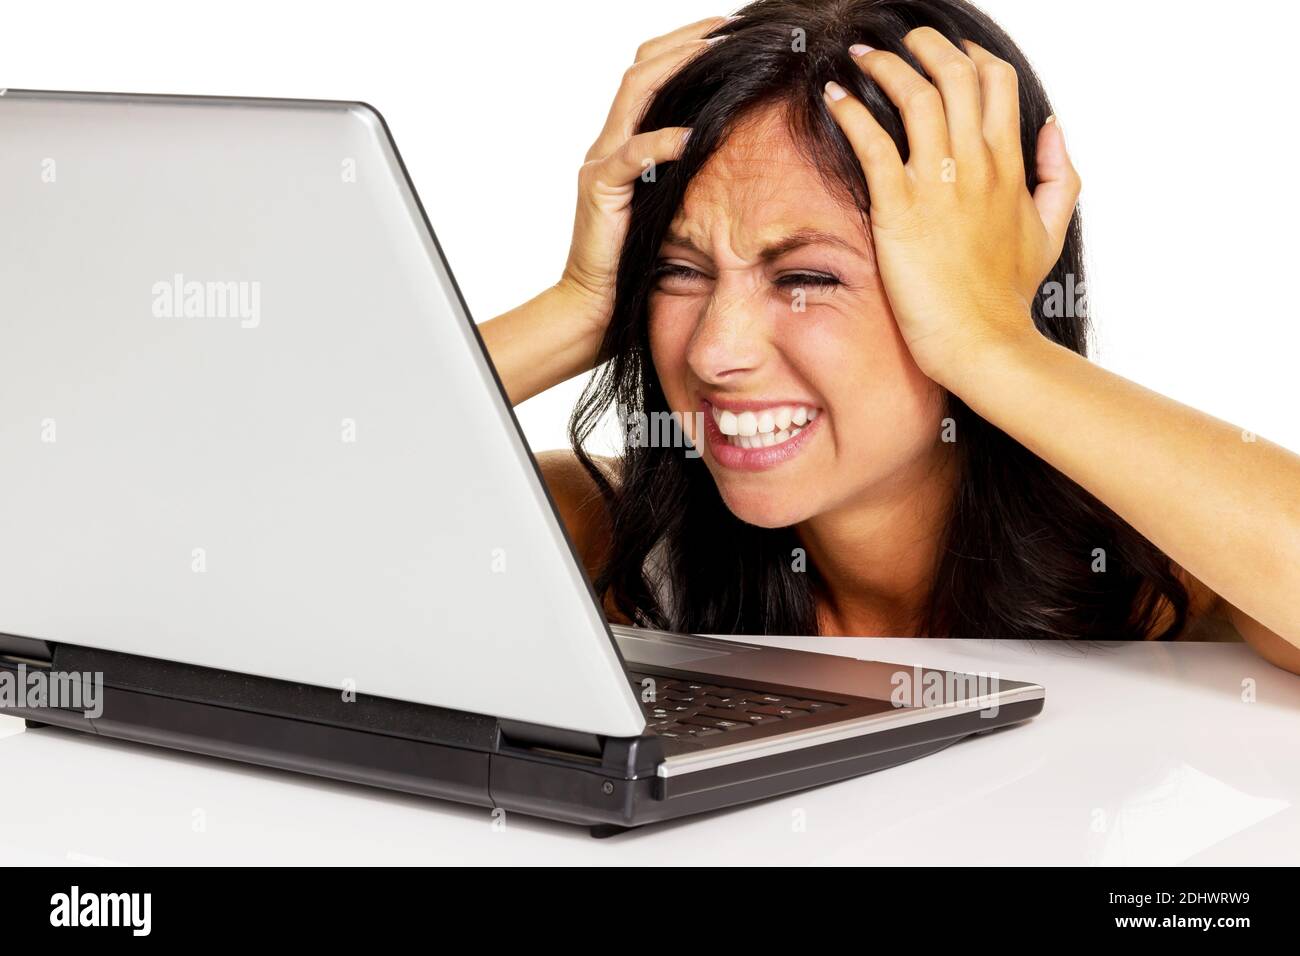 Junge Frau mit Laptop ist verzweifelt, fehlende Computer Kenntnisse, Foto de stock